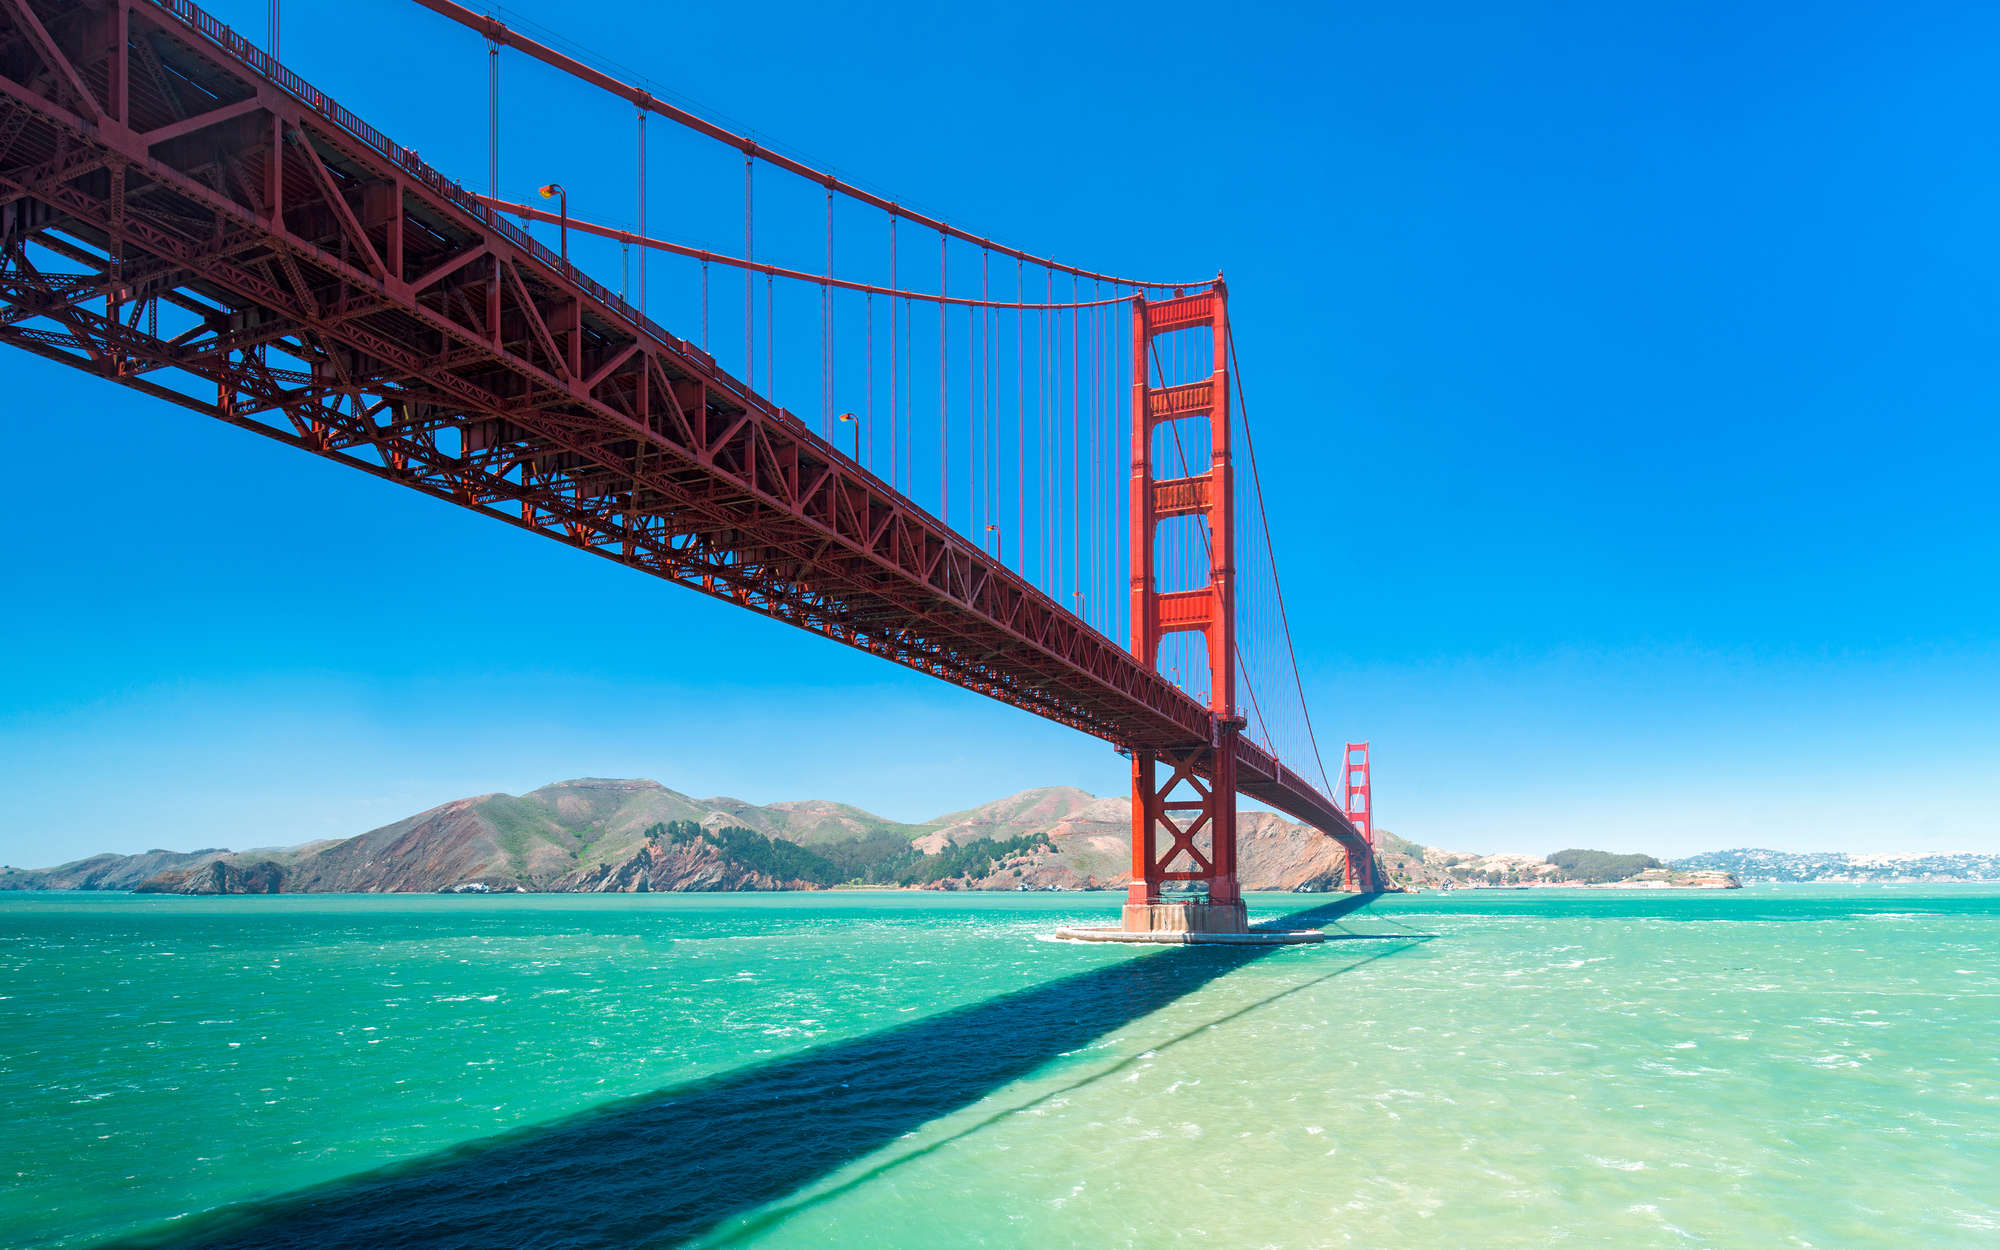             Mural del puente Golden Gate en San Francisco - vellón liso nacarado
        